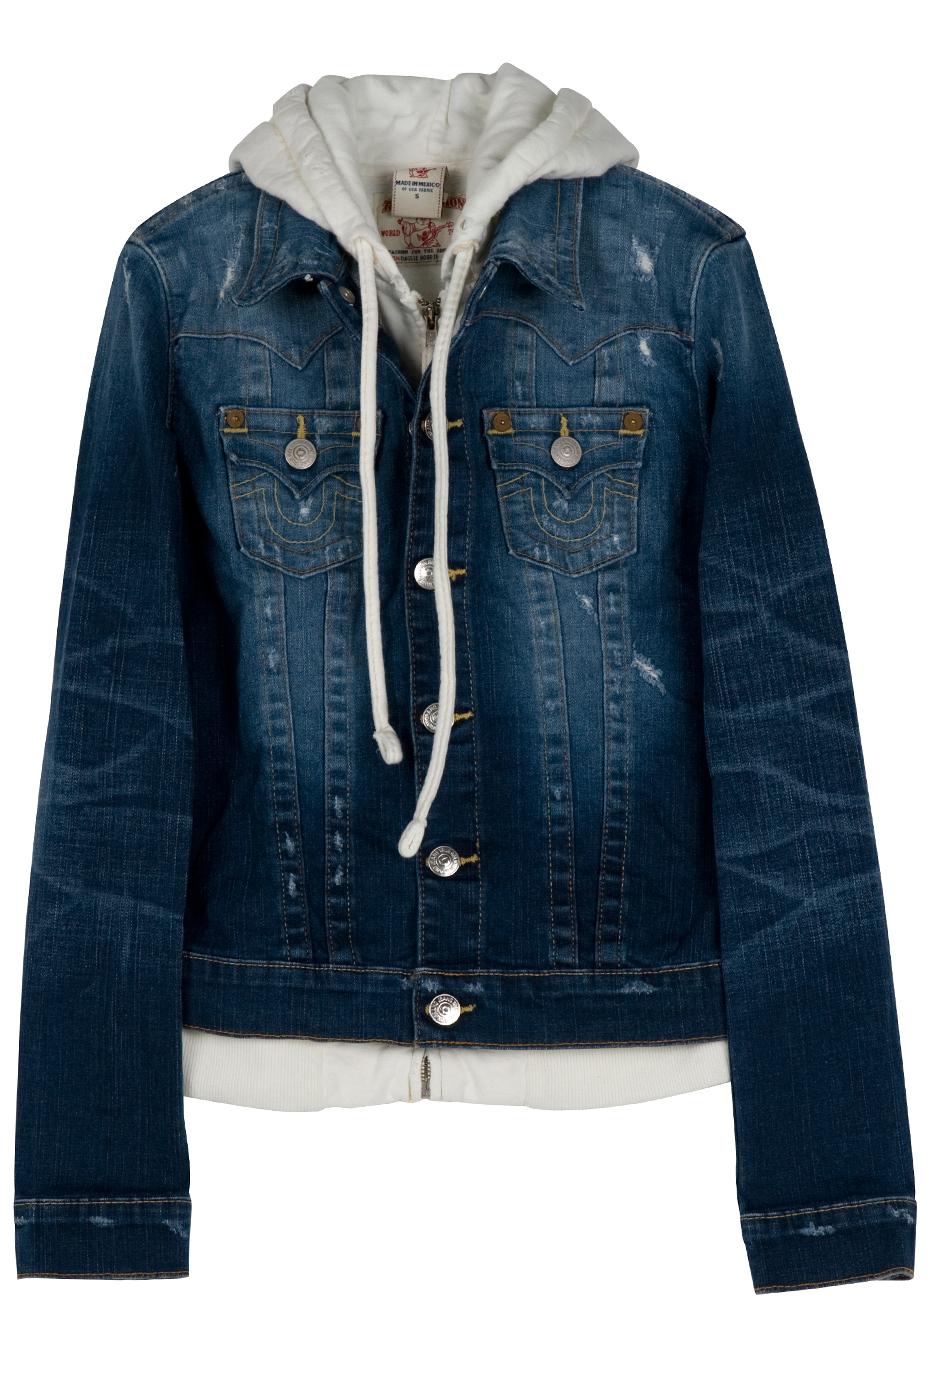 True Religion Jimmy Hooded Denim Jacket in Blue (denim) | Lyst